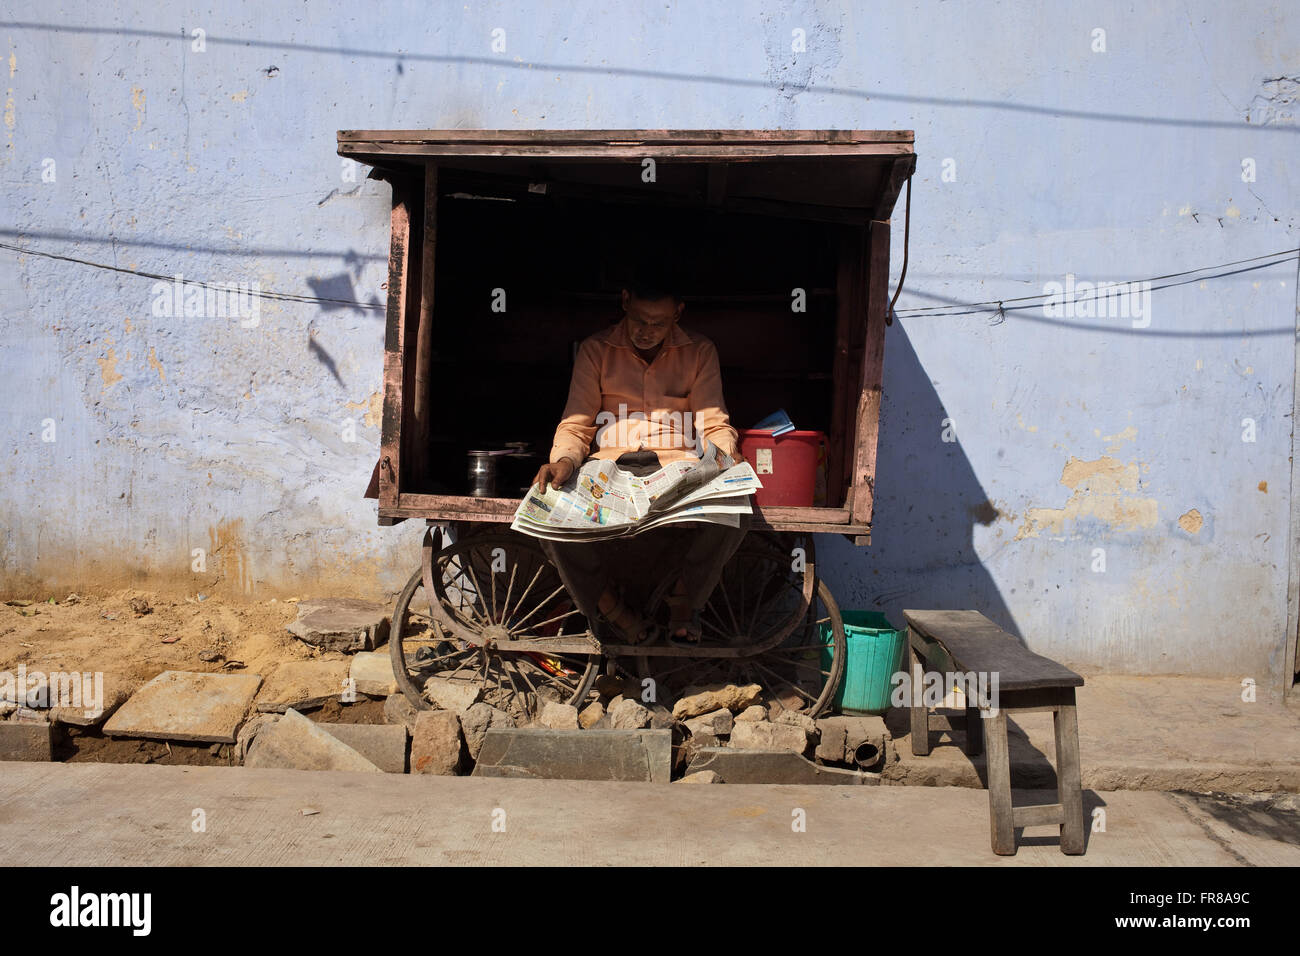 Newspaper break, mobile tea vendor, Jaipur, Rajasthan, India Stock Photo